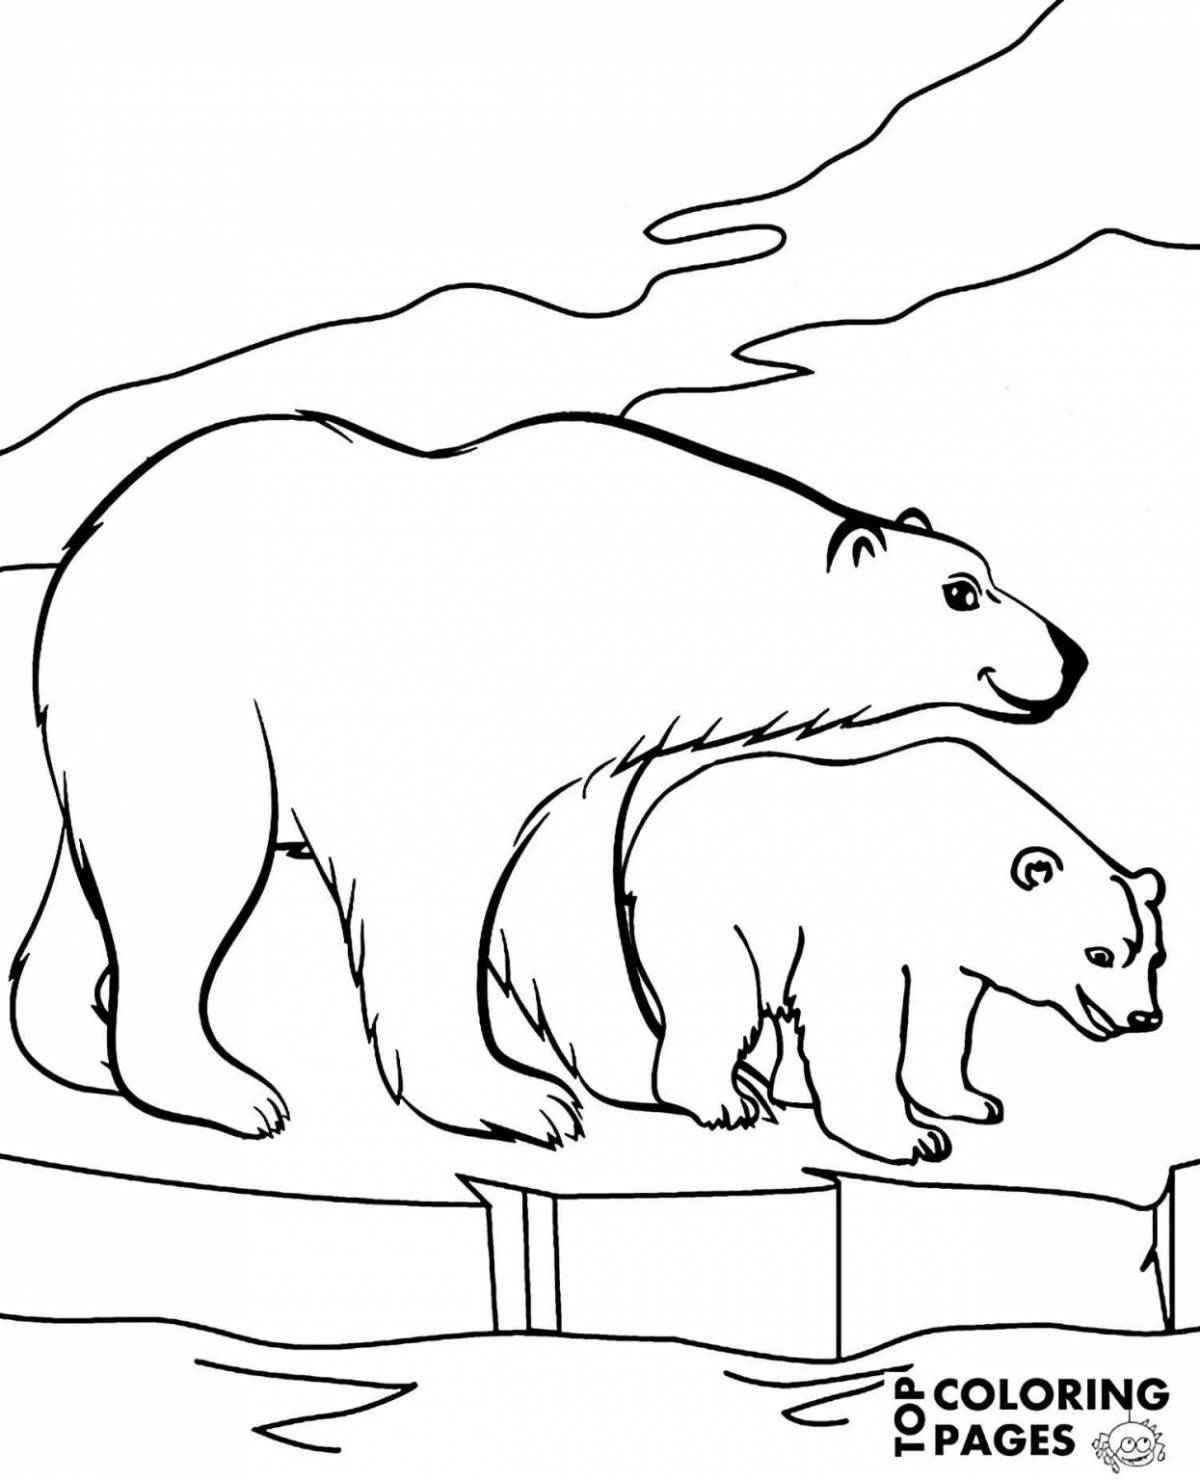 Изысканная раскраска белого медведя для детей